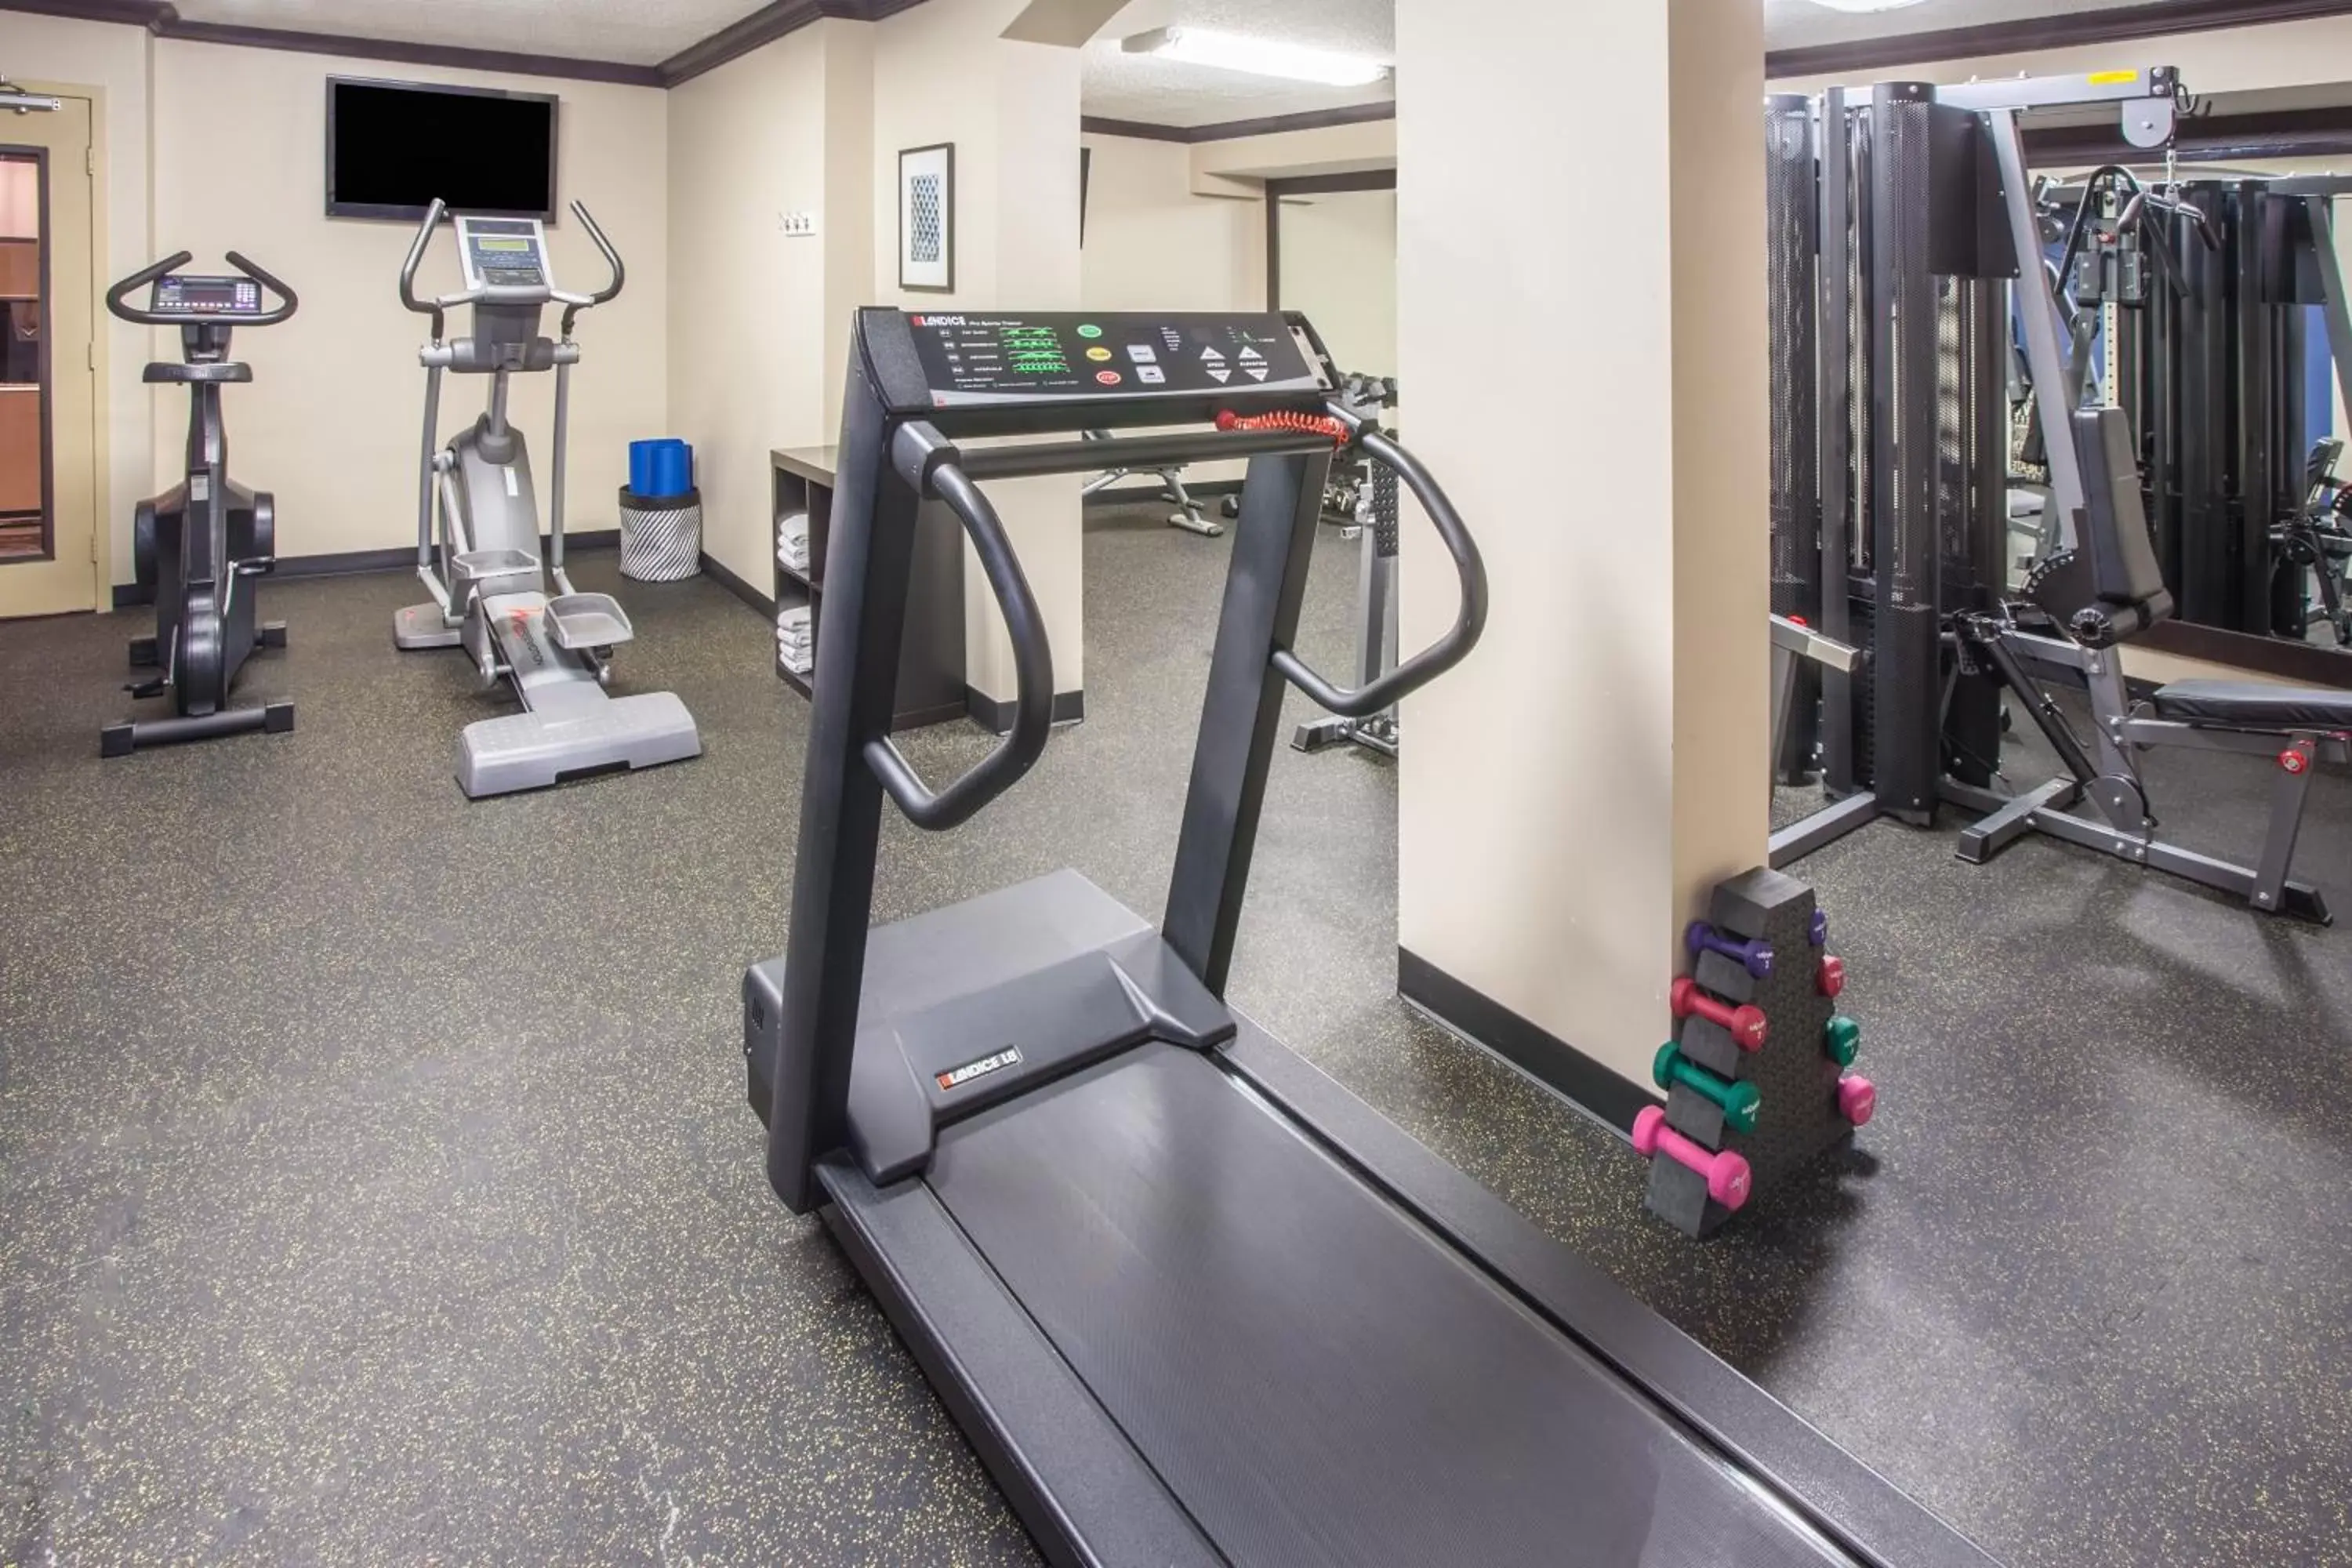 Fitness centre/facilities, Fitness Center/Facilities in Wyndham Garden Schaumburg Chicago Northwest